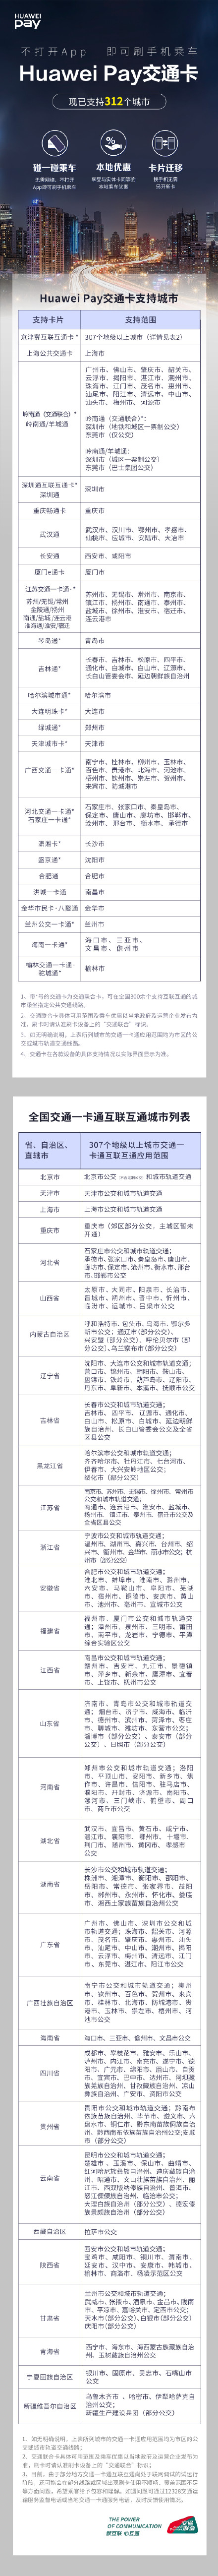 Huawei Pay新发布6个大城市公共交通卡，累计已经适用39张